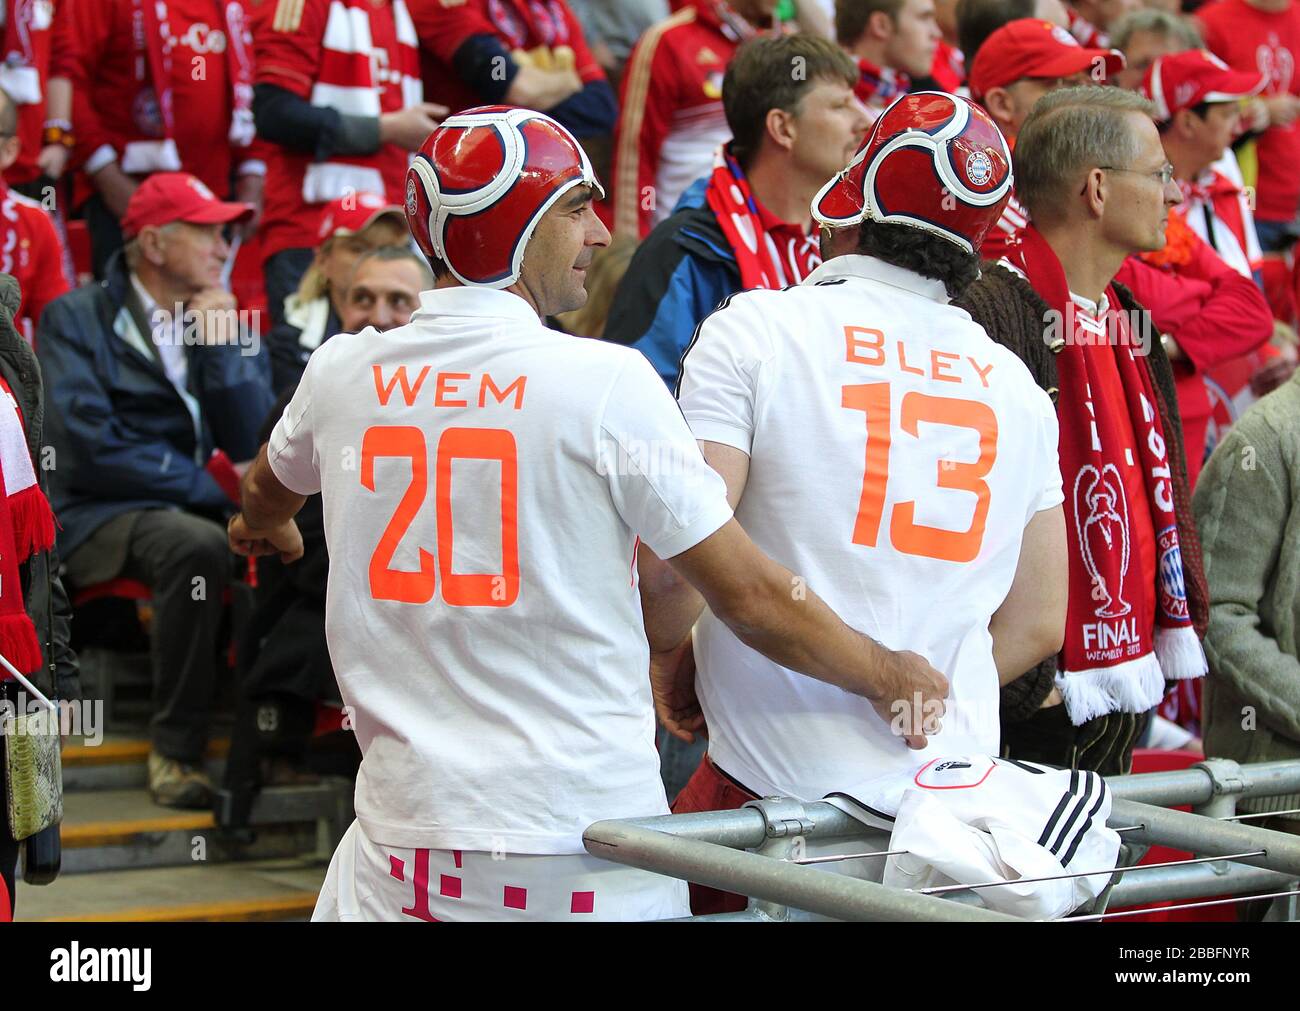 Deux fans ont les mots 'Wem' et 'Bley' écrits sur le dos de leurs chemises avec les numéros 20 et 13 Banque D'Images